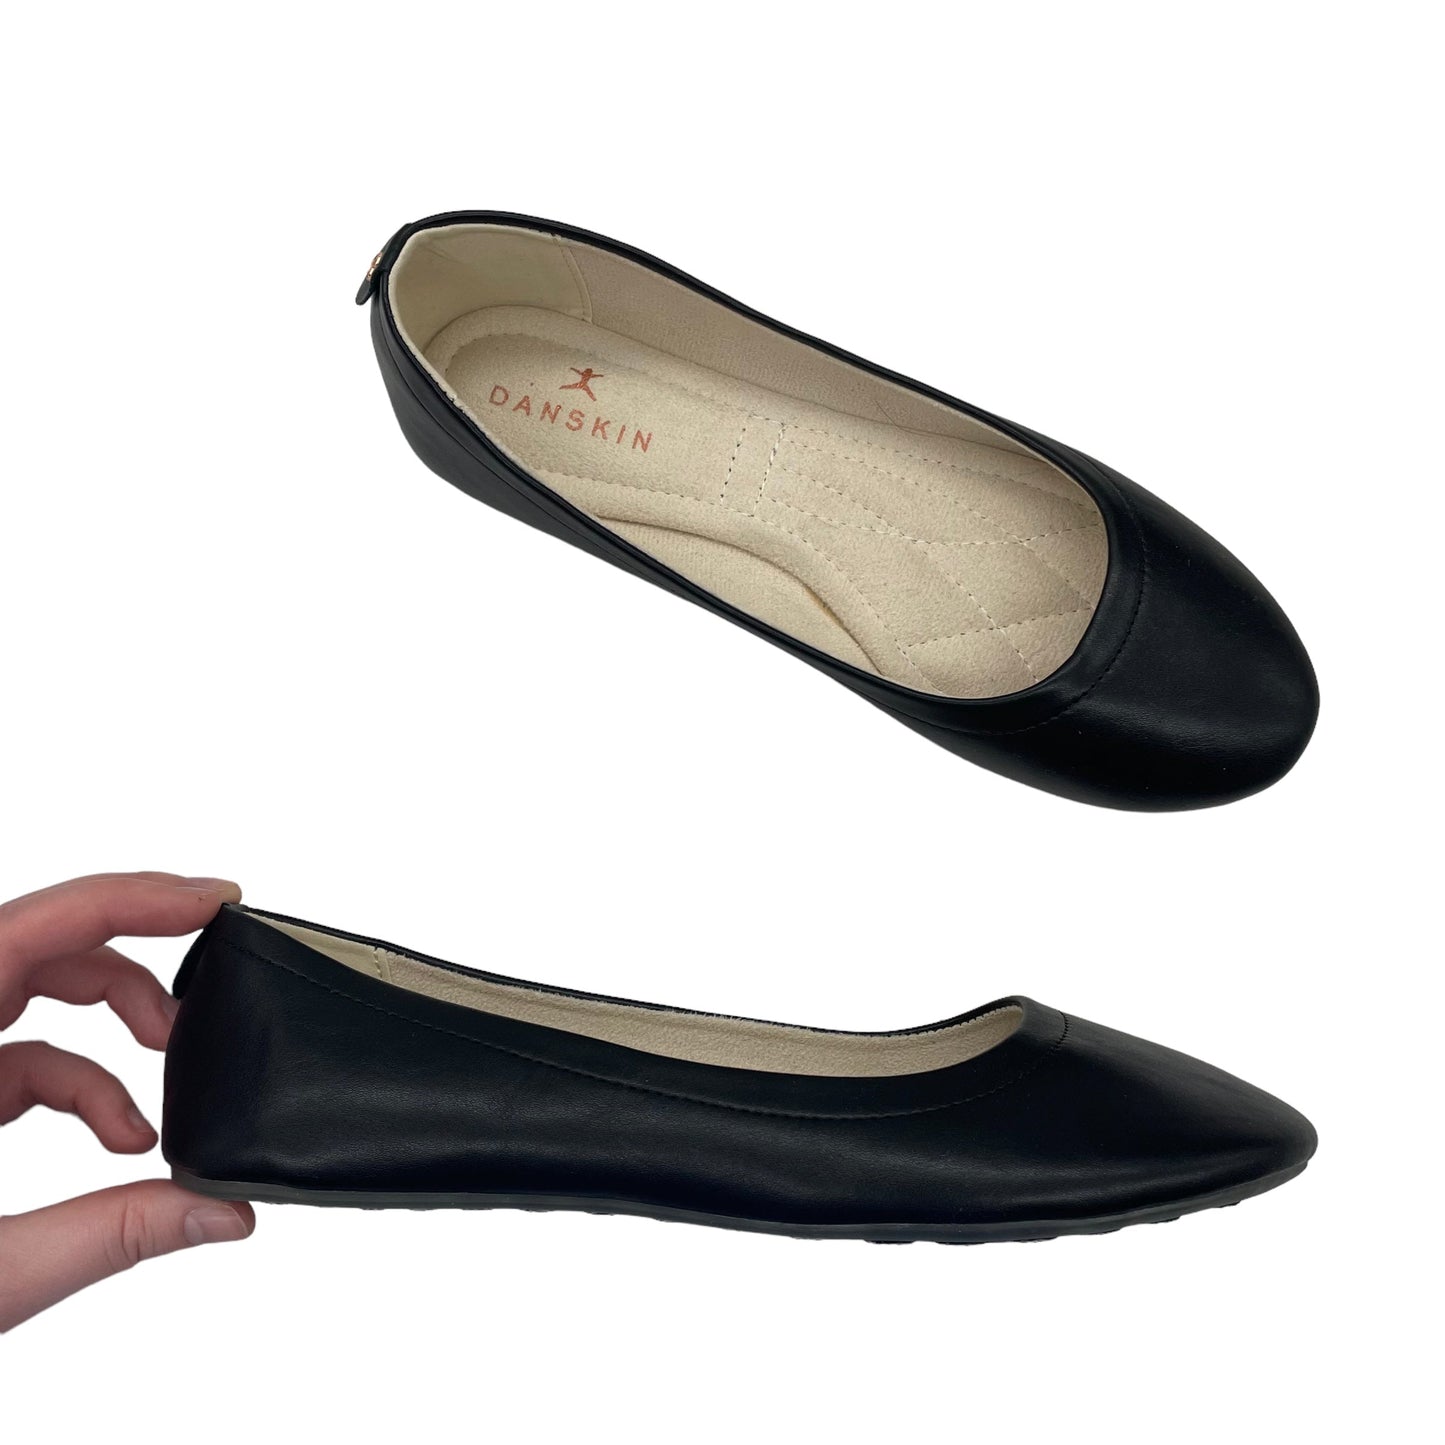 Shoes Flats By Danskin  Size: 8.5